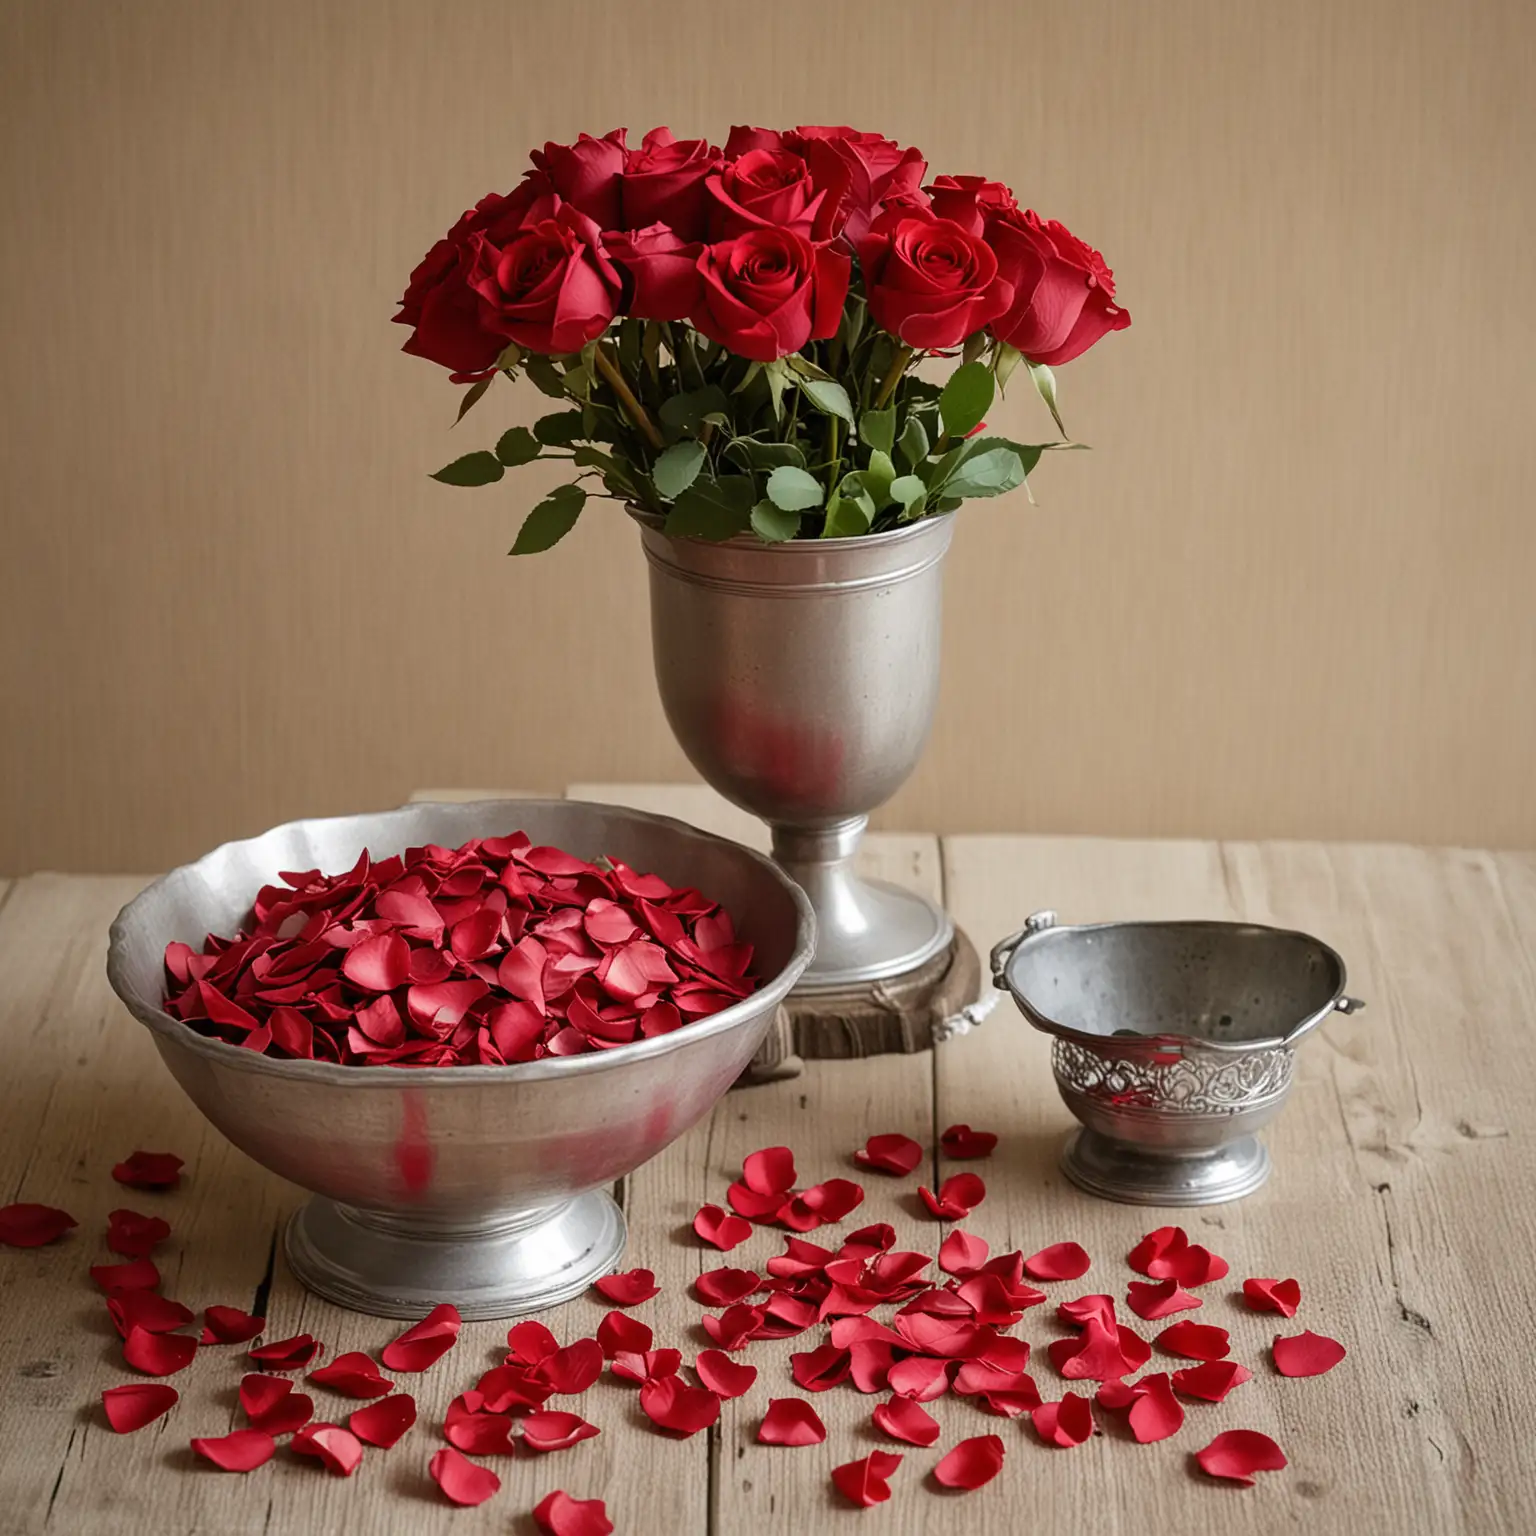 DIY-Vintage-Wedding-Centerpieces-Red-Rose-Petals-in-Antique-Mixing-Bowl